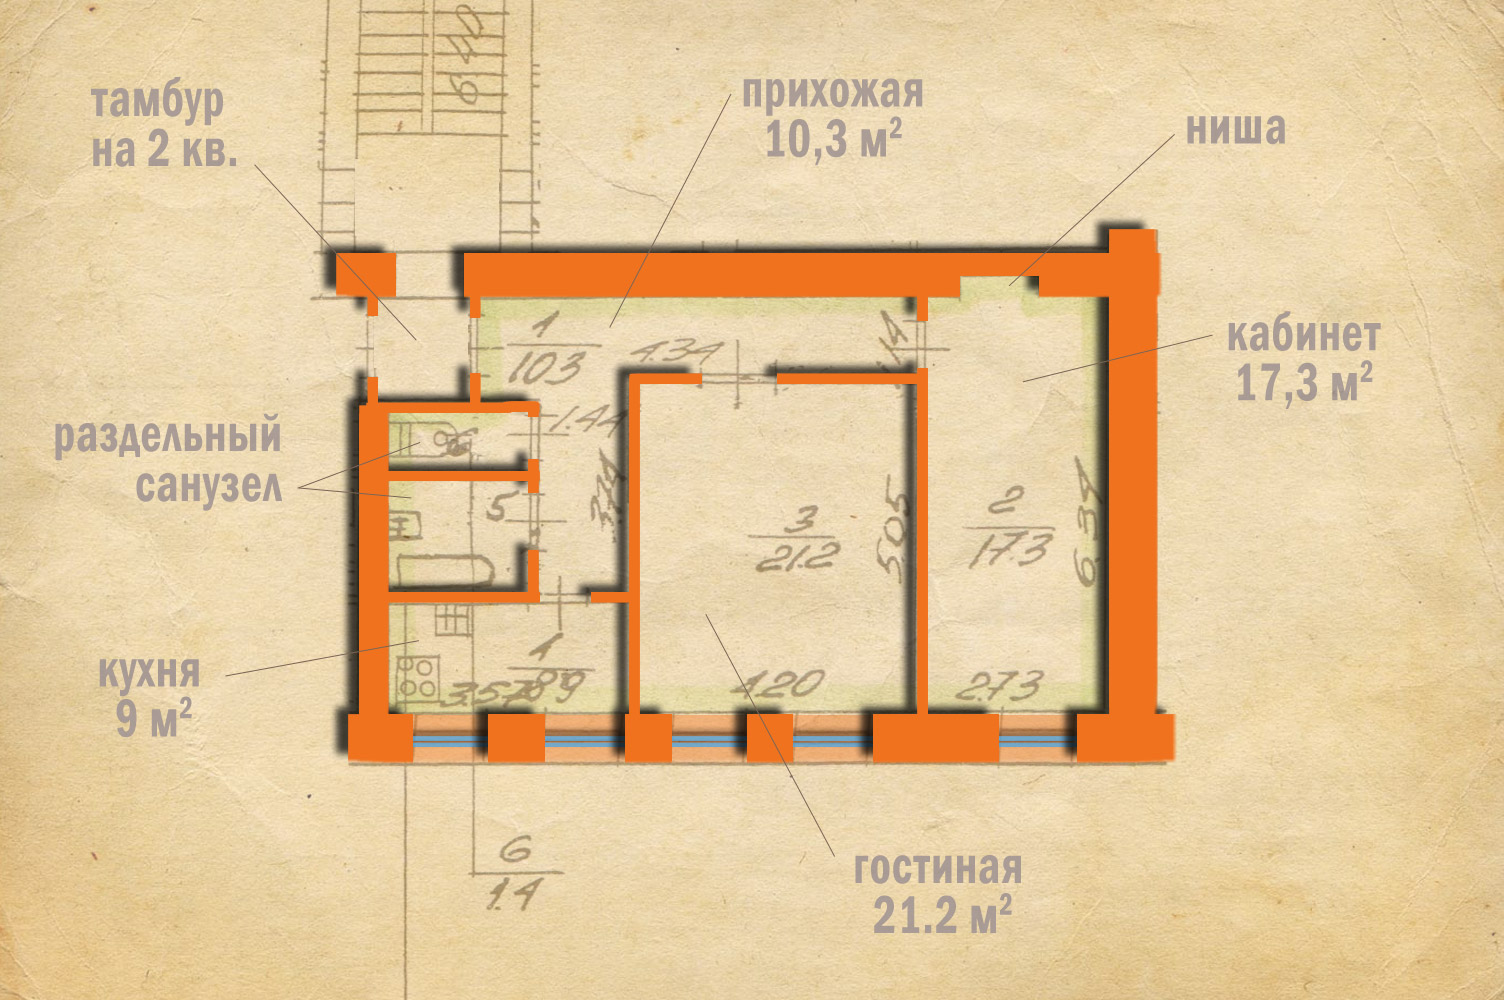 просторные изолированные комнаты 17 и 21 кв.м, 9-метровая светлая кухня с двумя окнами